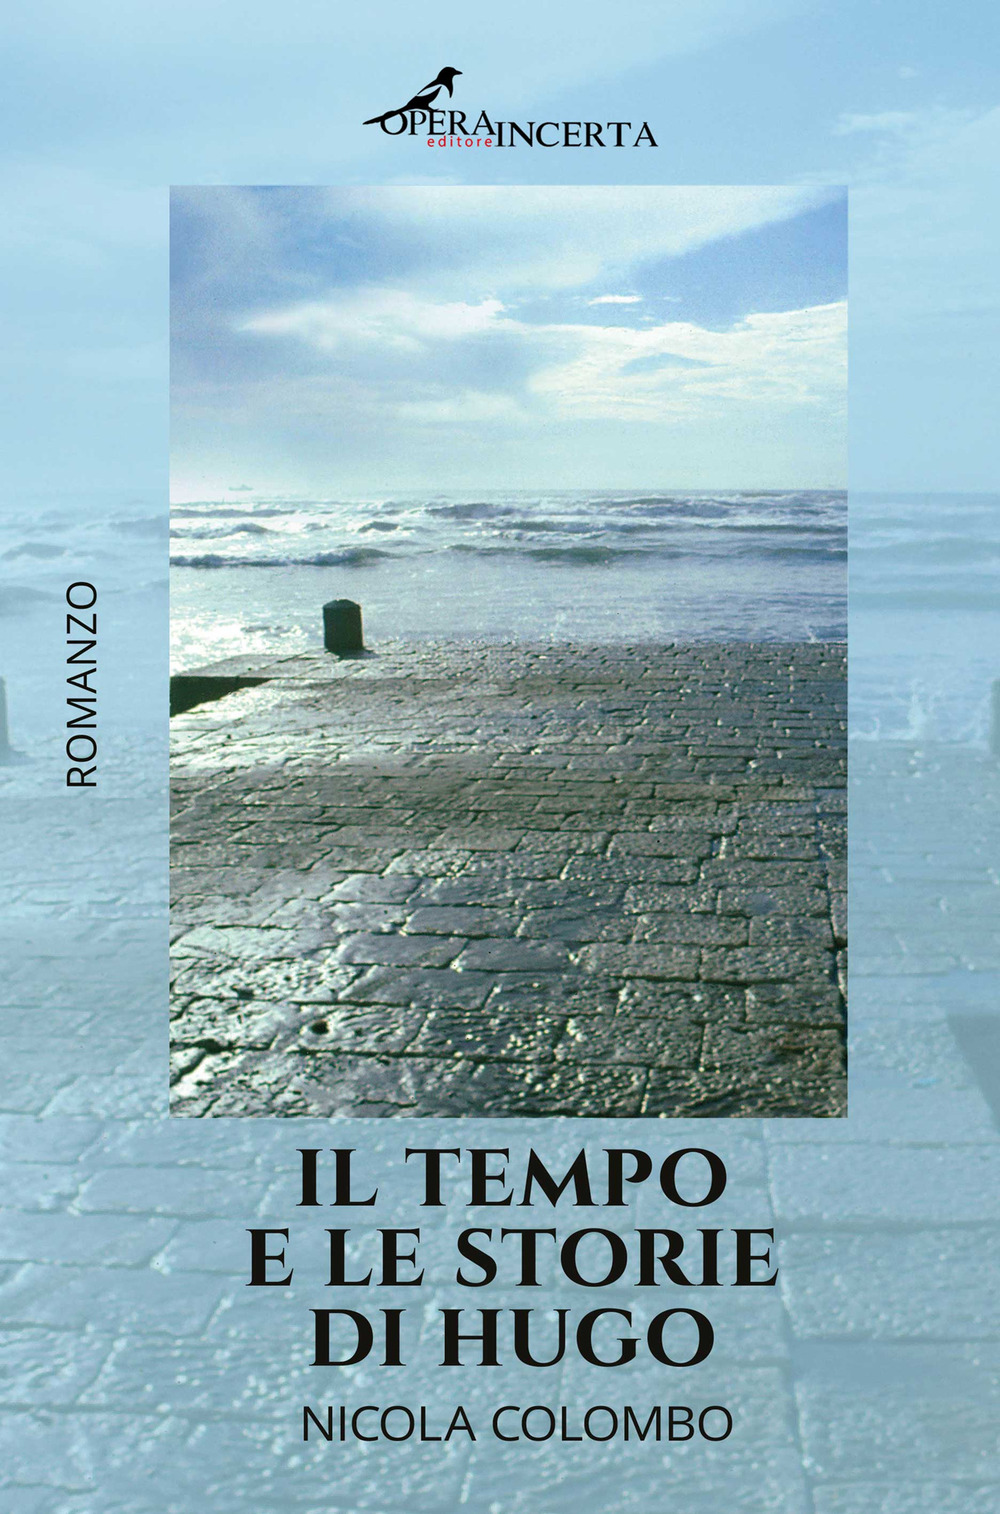 Libri Nicola Colombo - Il Tempo E Le Storie Di Hugo NUOVO SIGILLATO, EDIZIONE DEL 01/09/2020 SUBITO DISPONIBILE